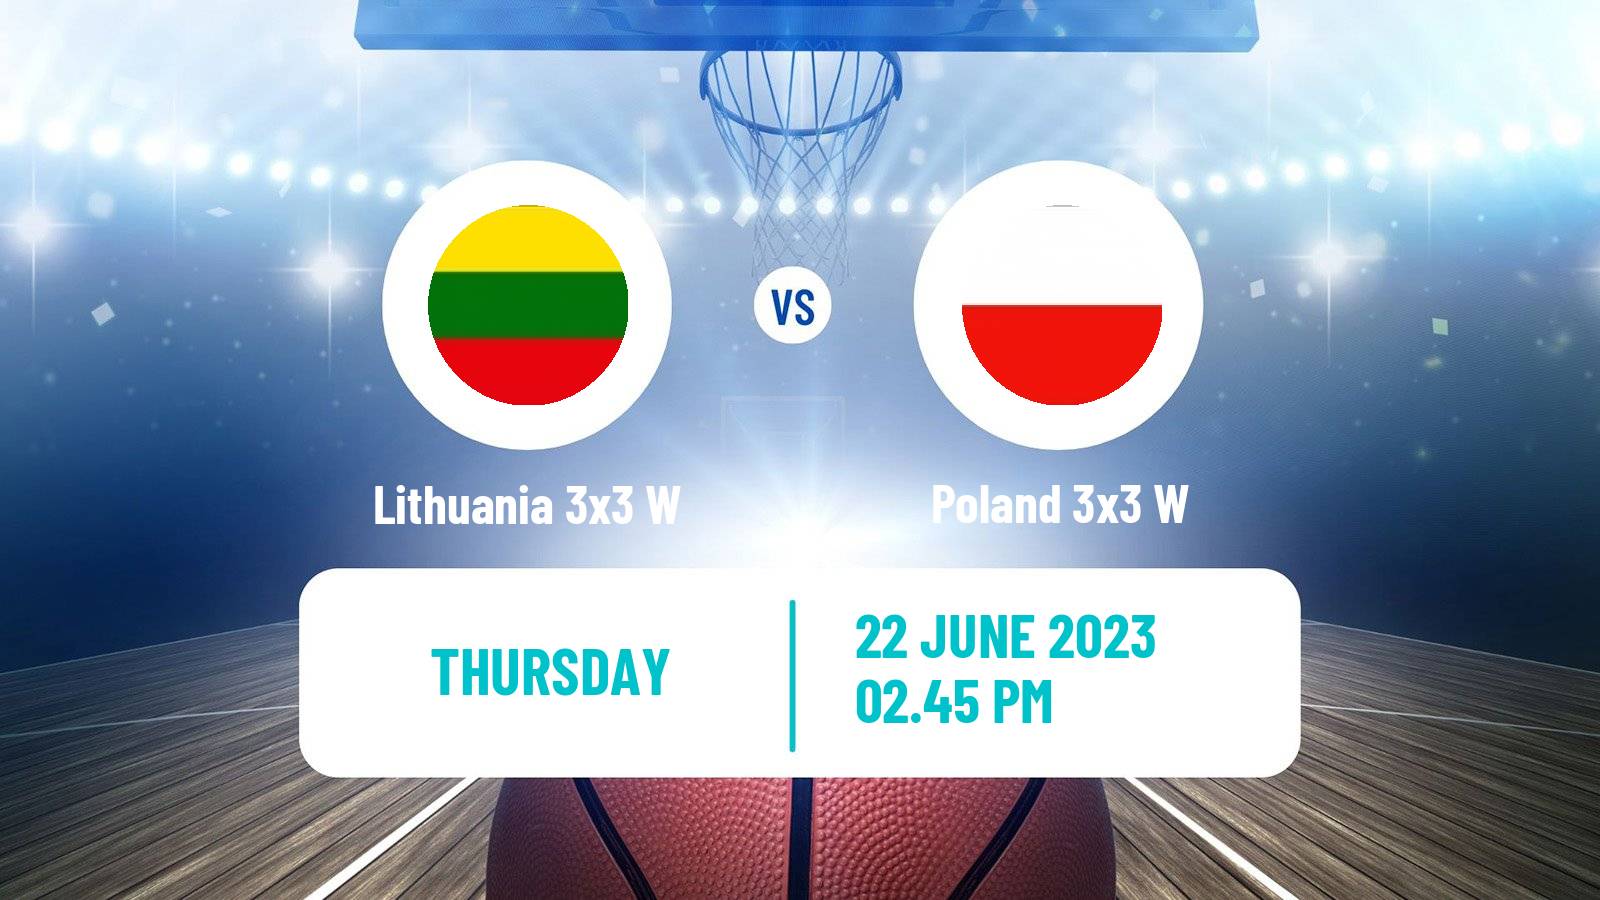 Basketball European Games 3x3 Women Lithuania 3x3 W - Poland 3x3 W